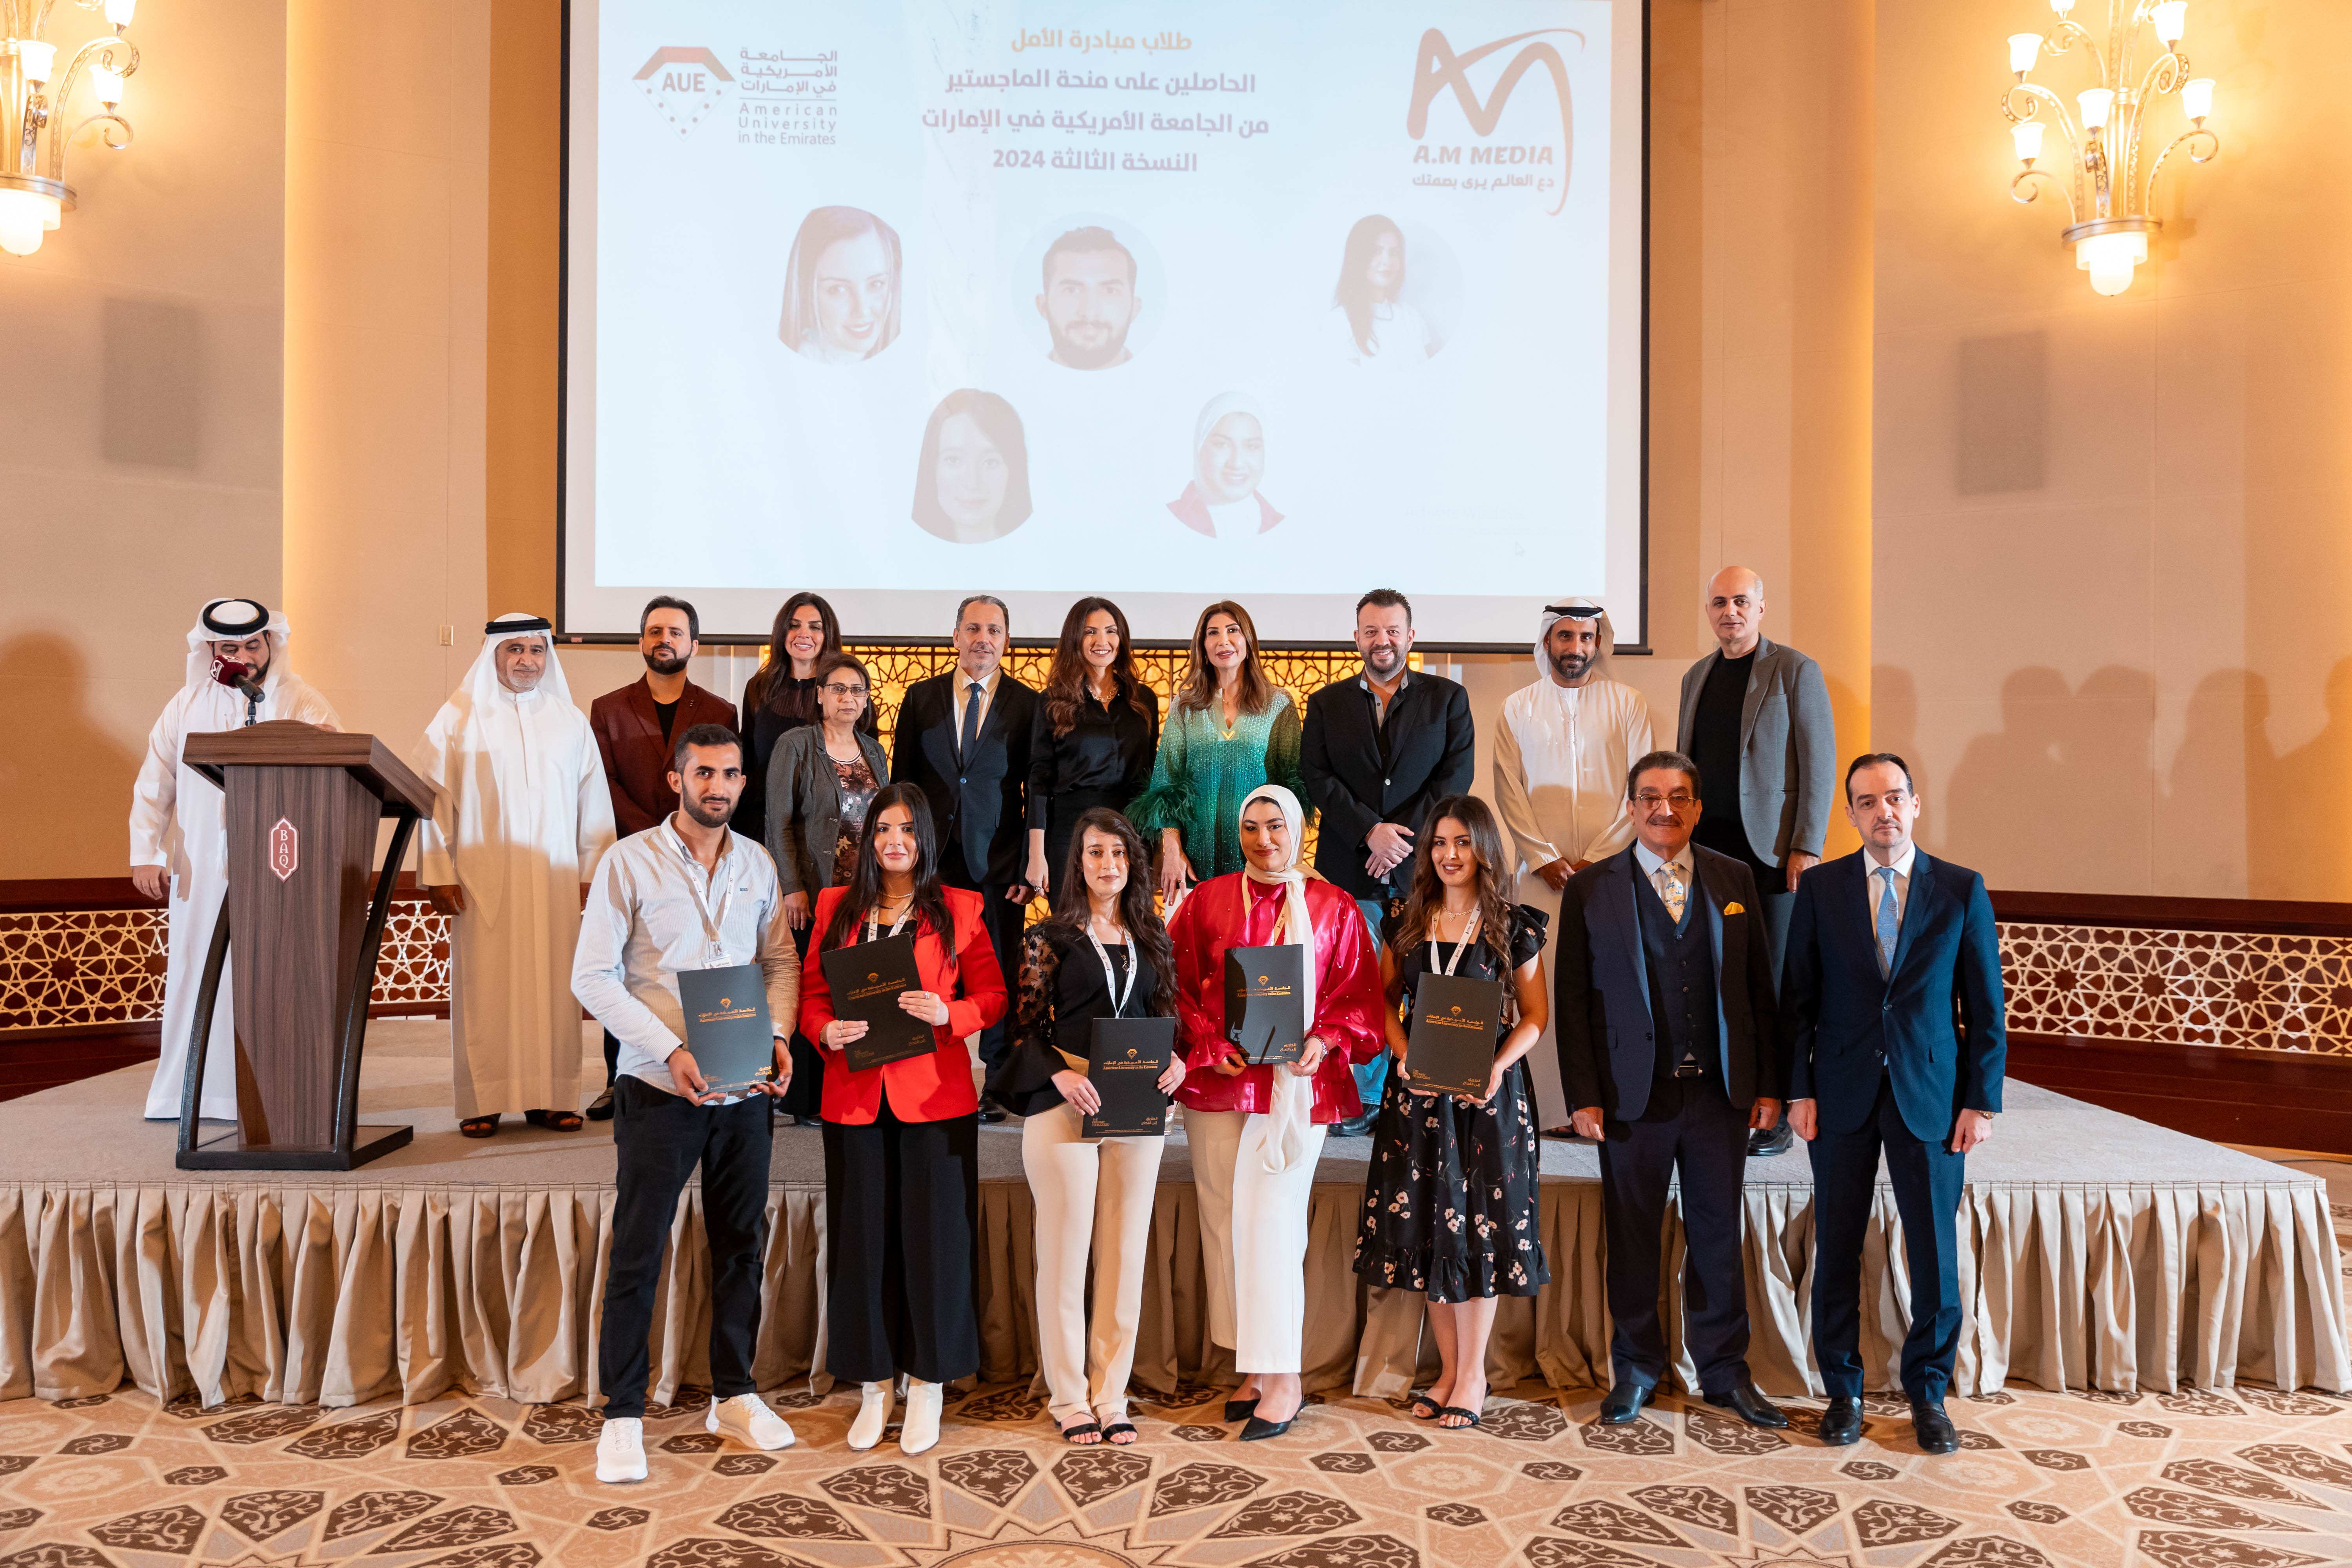 《مبادرة الأمل》 بنسختها الثالثة تكرّم الشباب العربي المتميز في مجال الإعلام